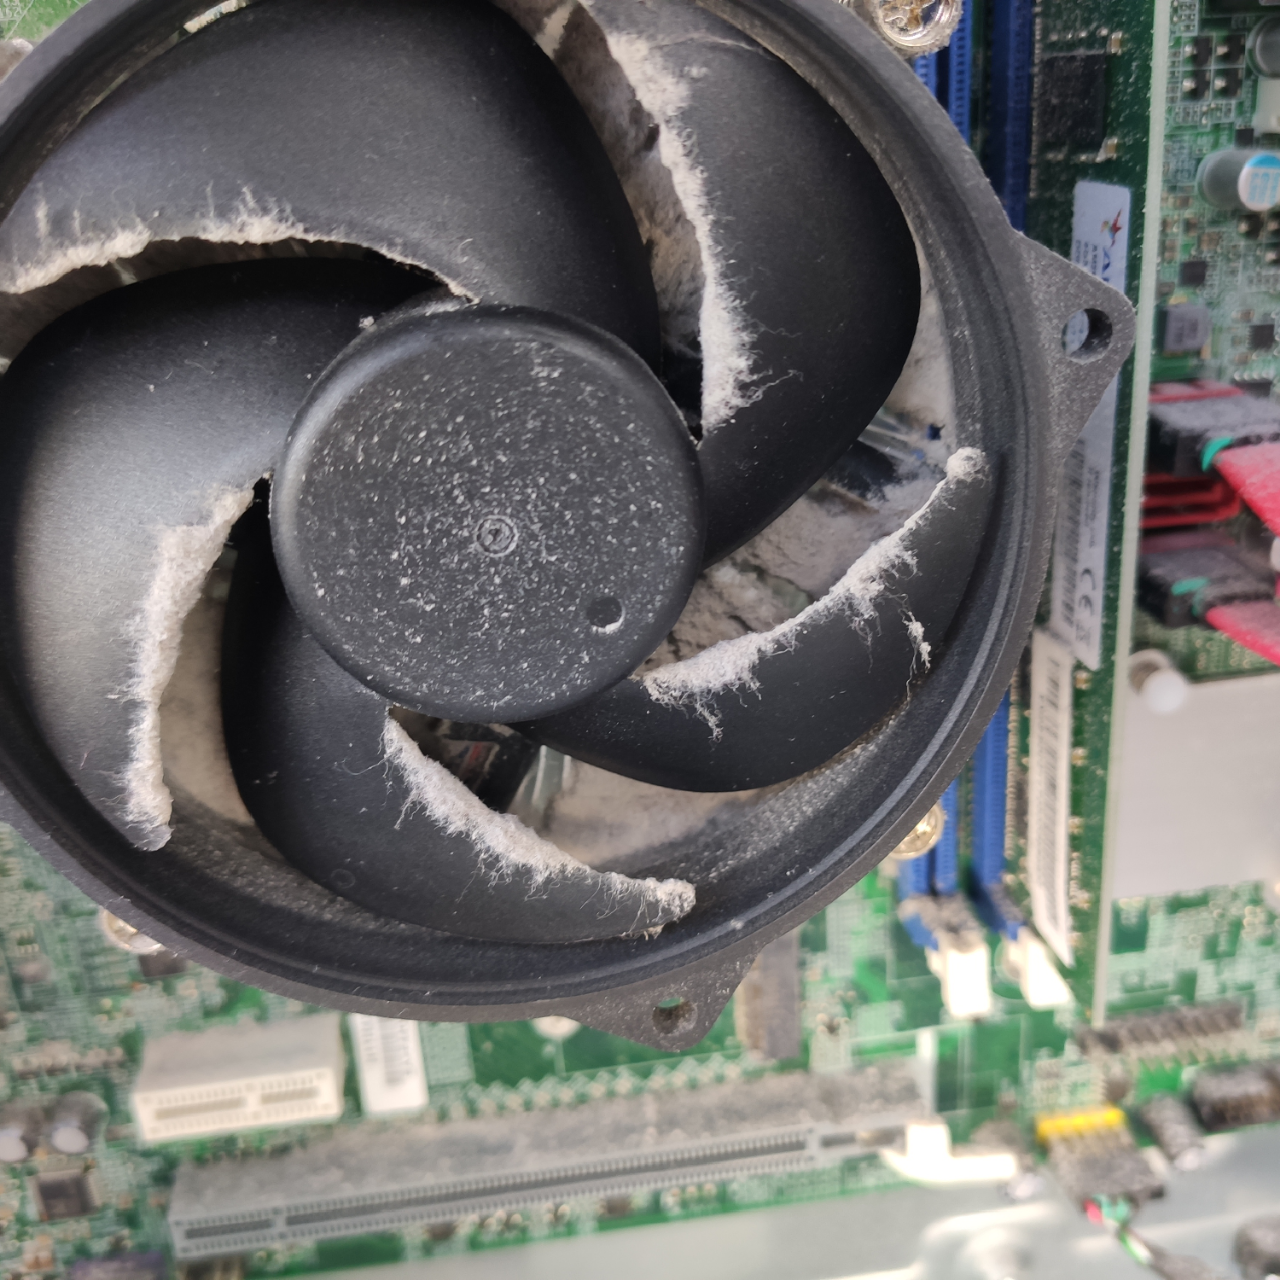 vollkommen verstaubte CPU-Kühlung --> mögliche Überhitzung